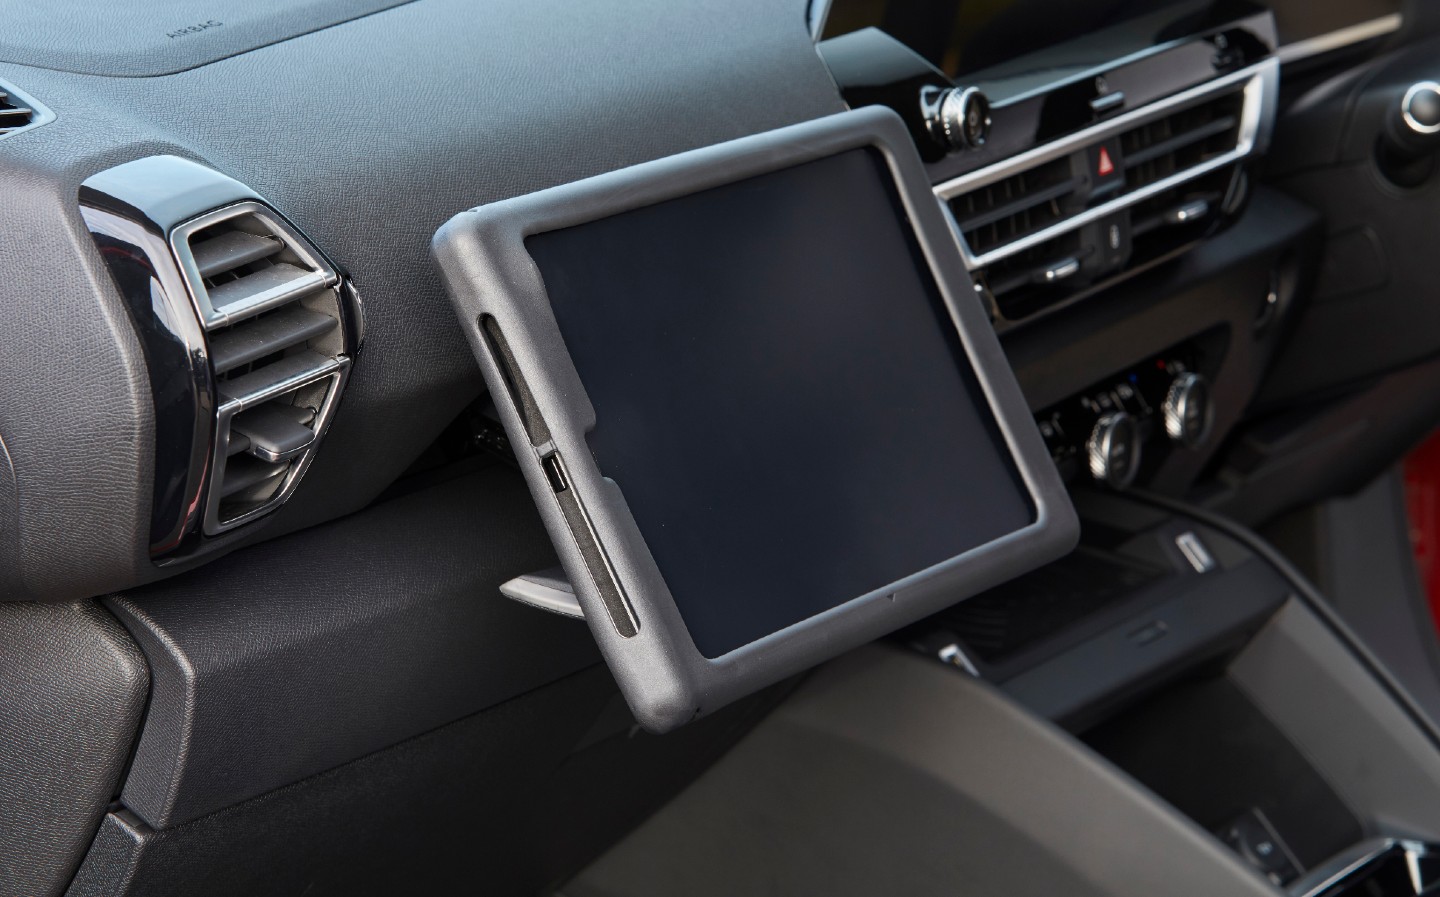 Citroën C4 2021 review - tablet holder